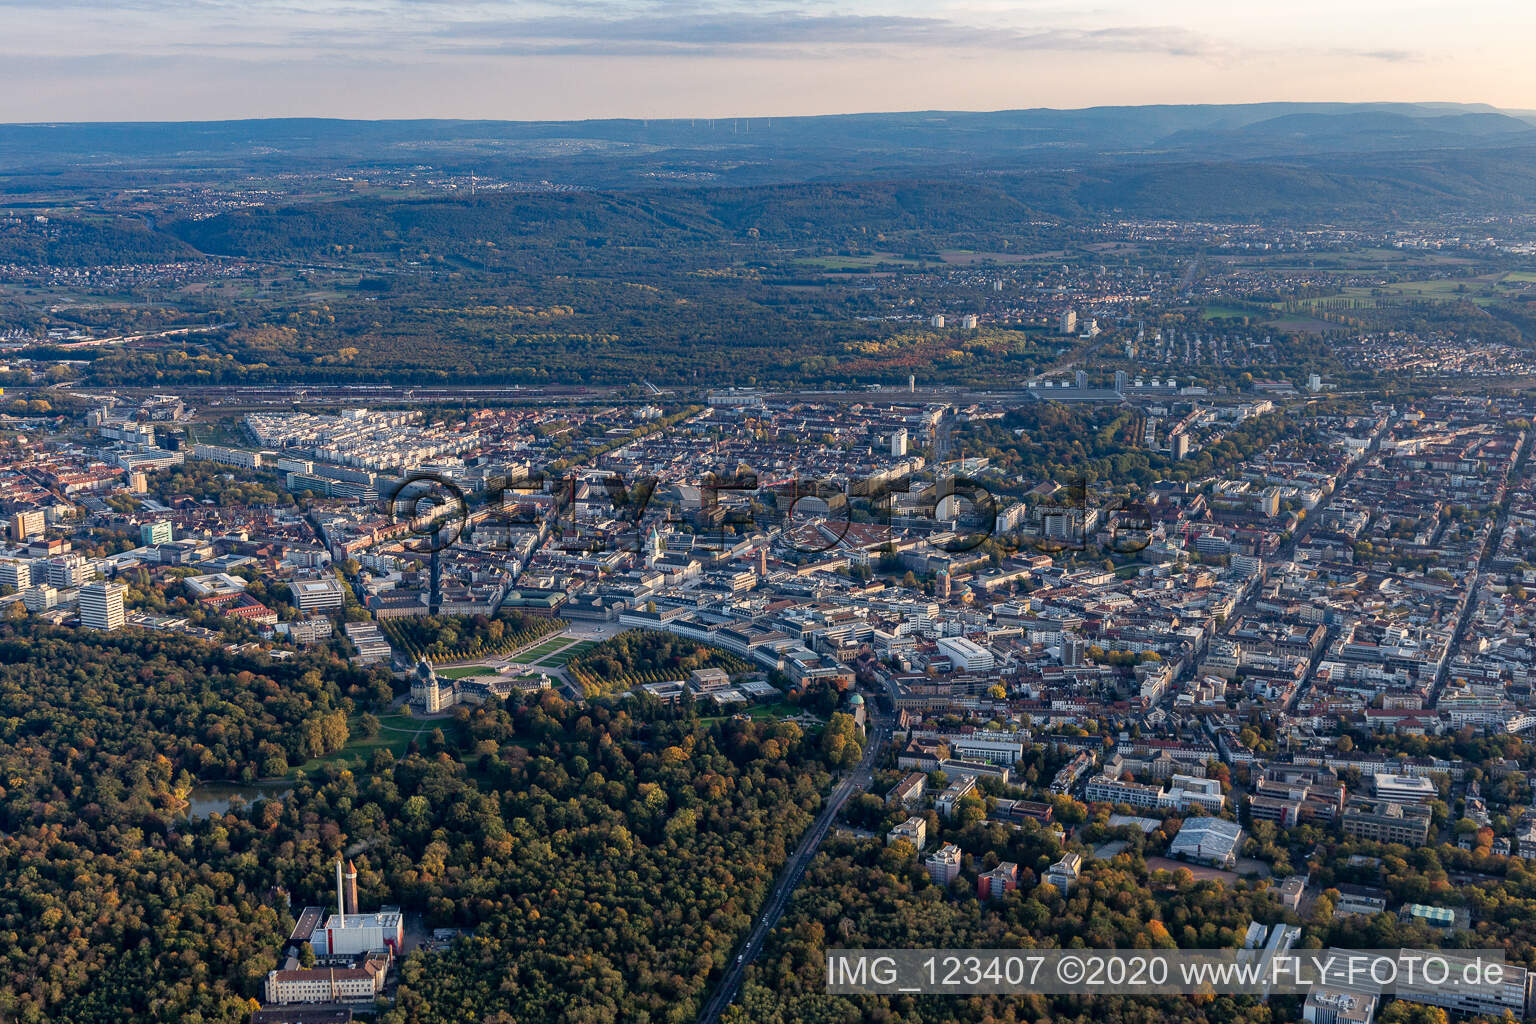 Quartier Innenstadt-West in Karlsruhe dans le département Bade-Wurtemberg, Allemagne vue du ciel